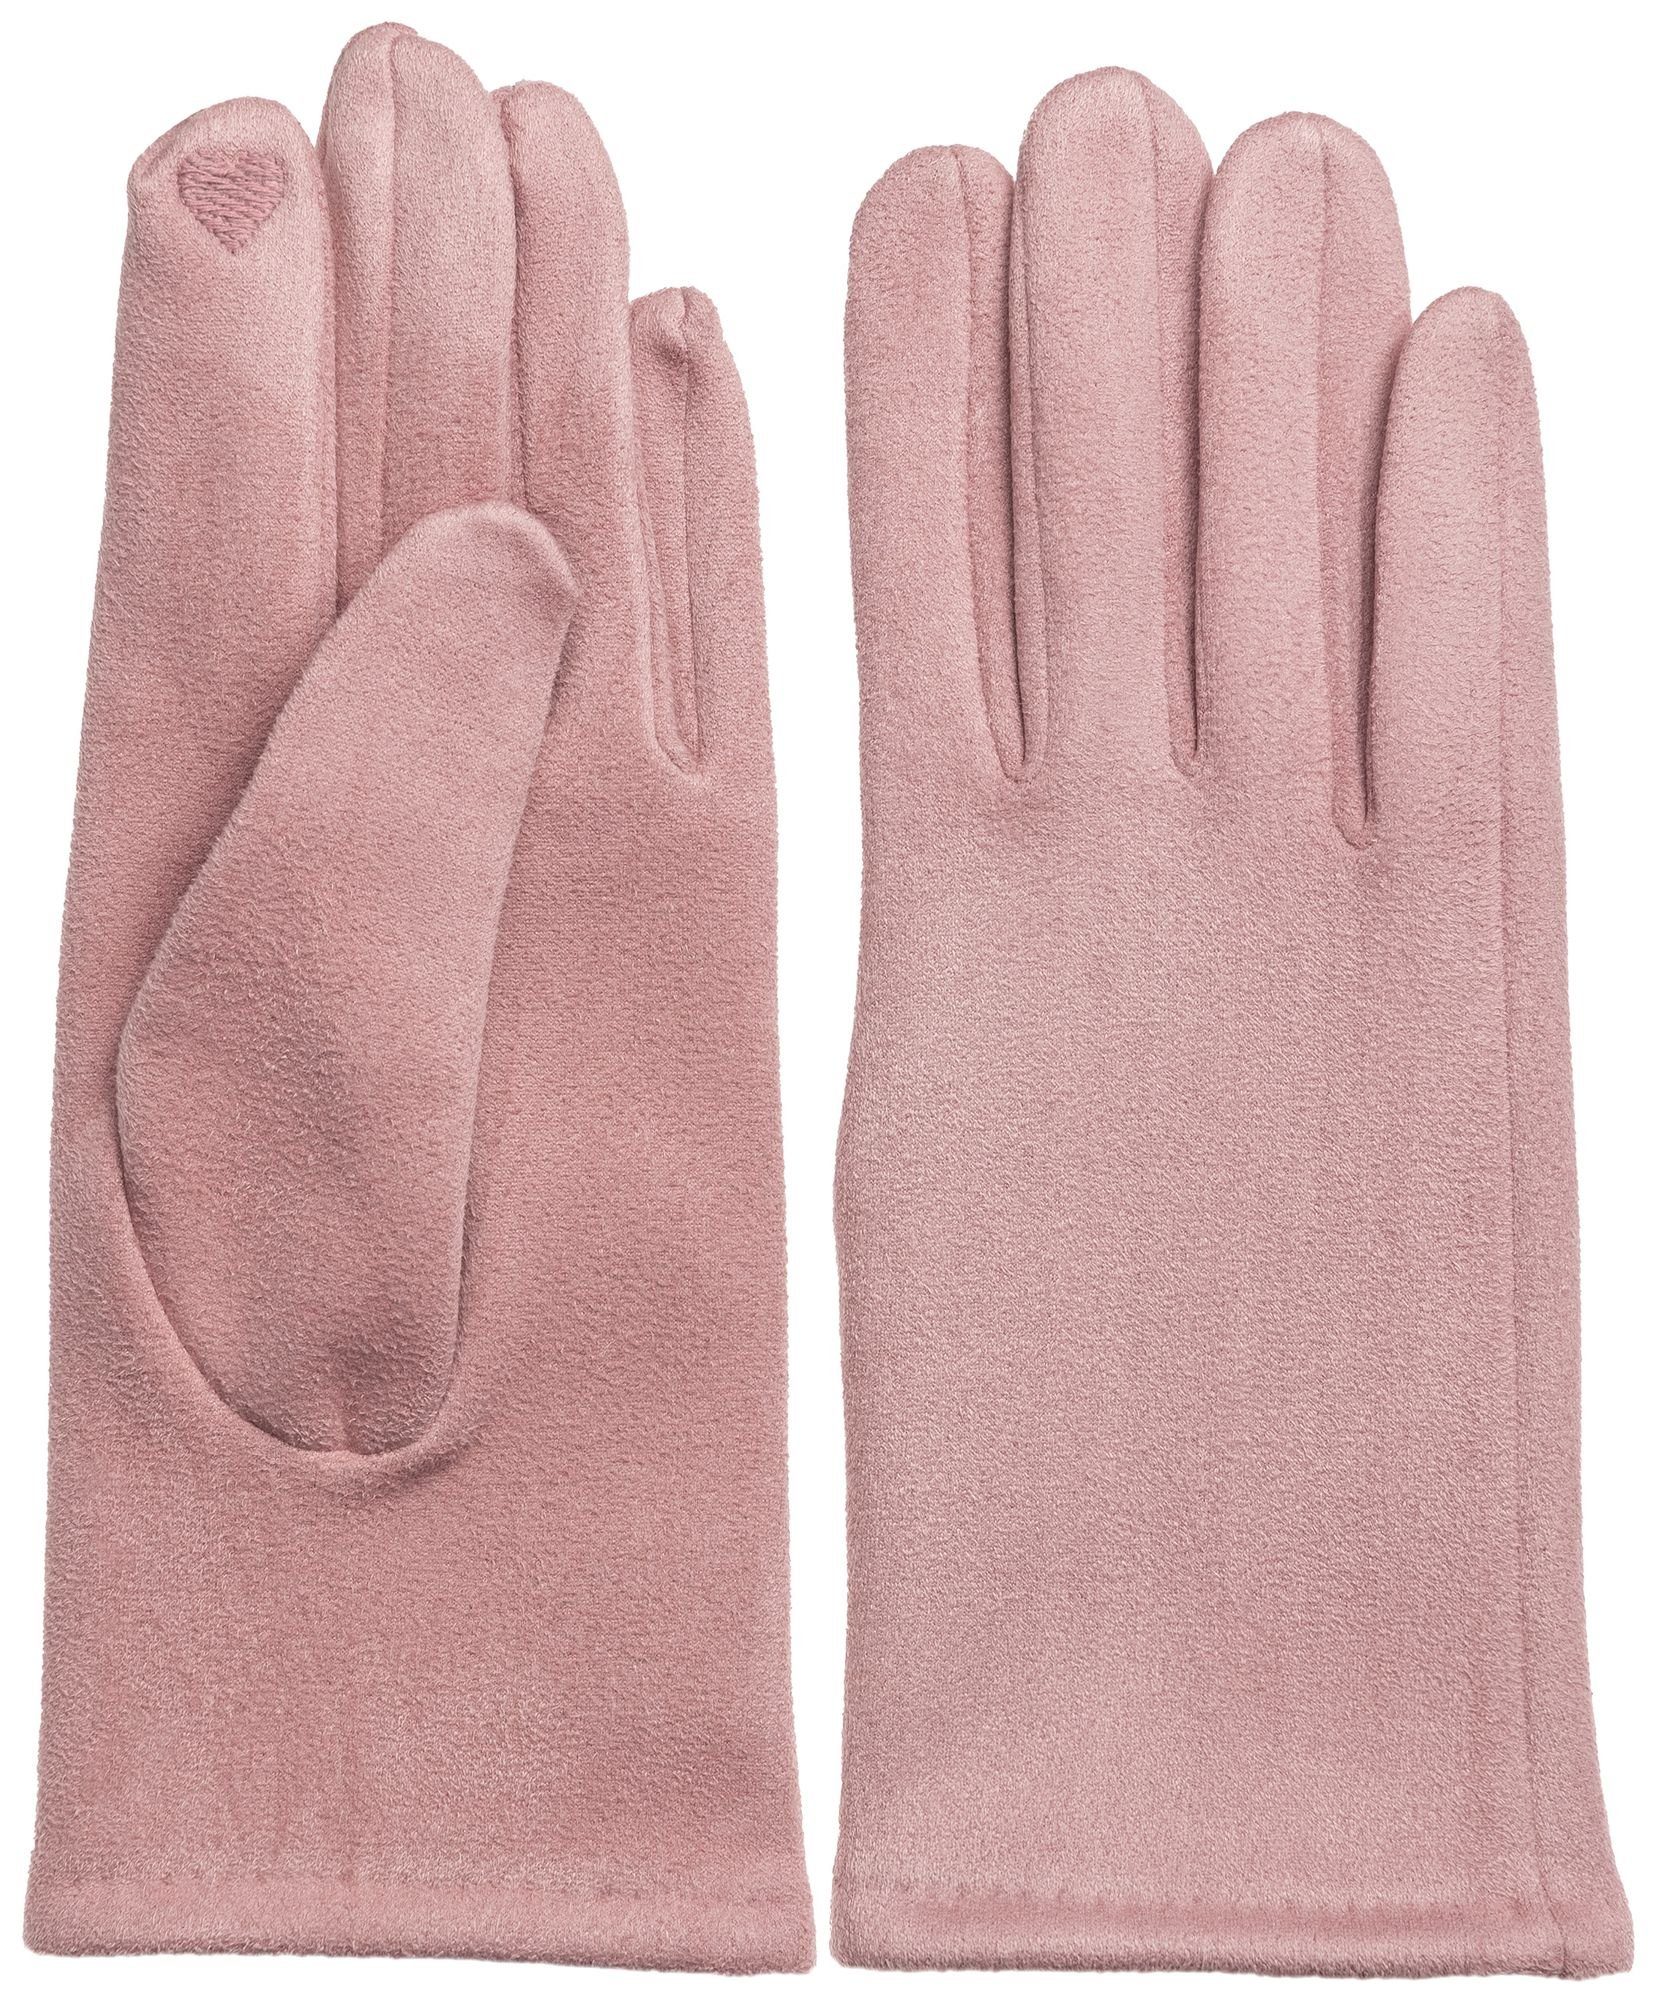 Caspar Strickhandschuhe GLV013 klassisch elegante uni Damen Winter Handschuhe rosa